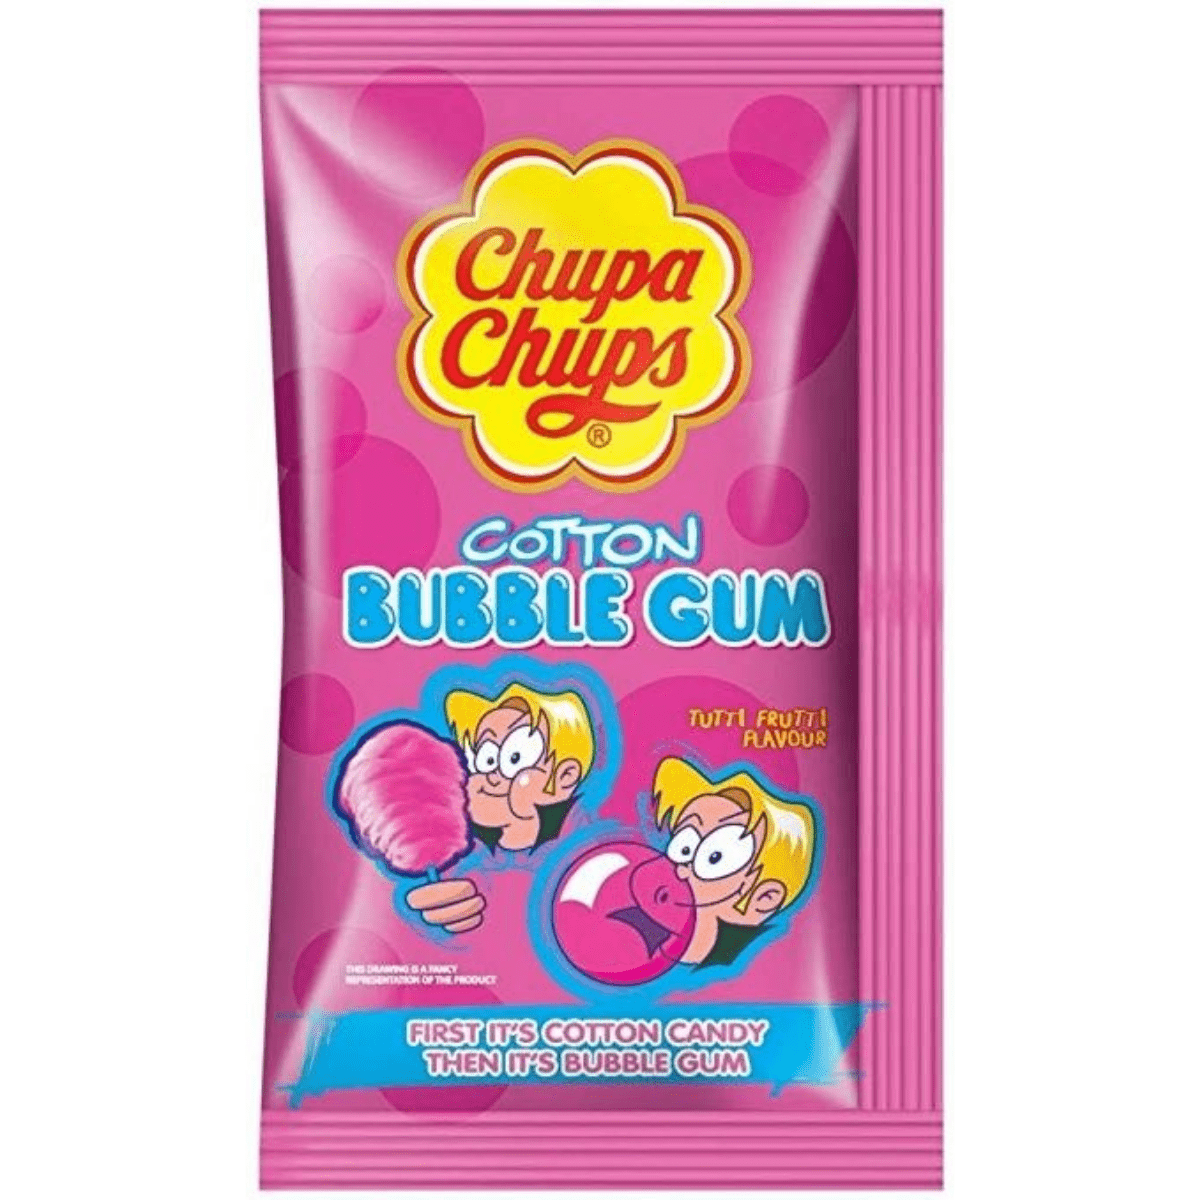 Chupa Chups Cotton Bubble Gum, 11g